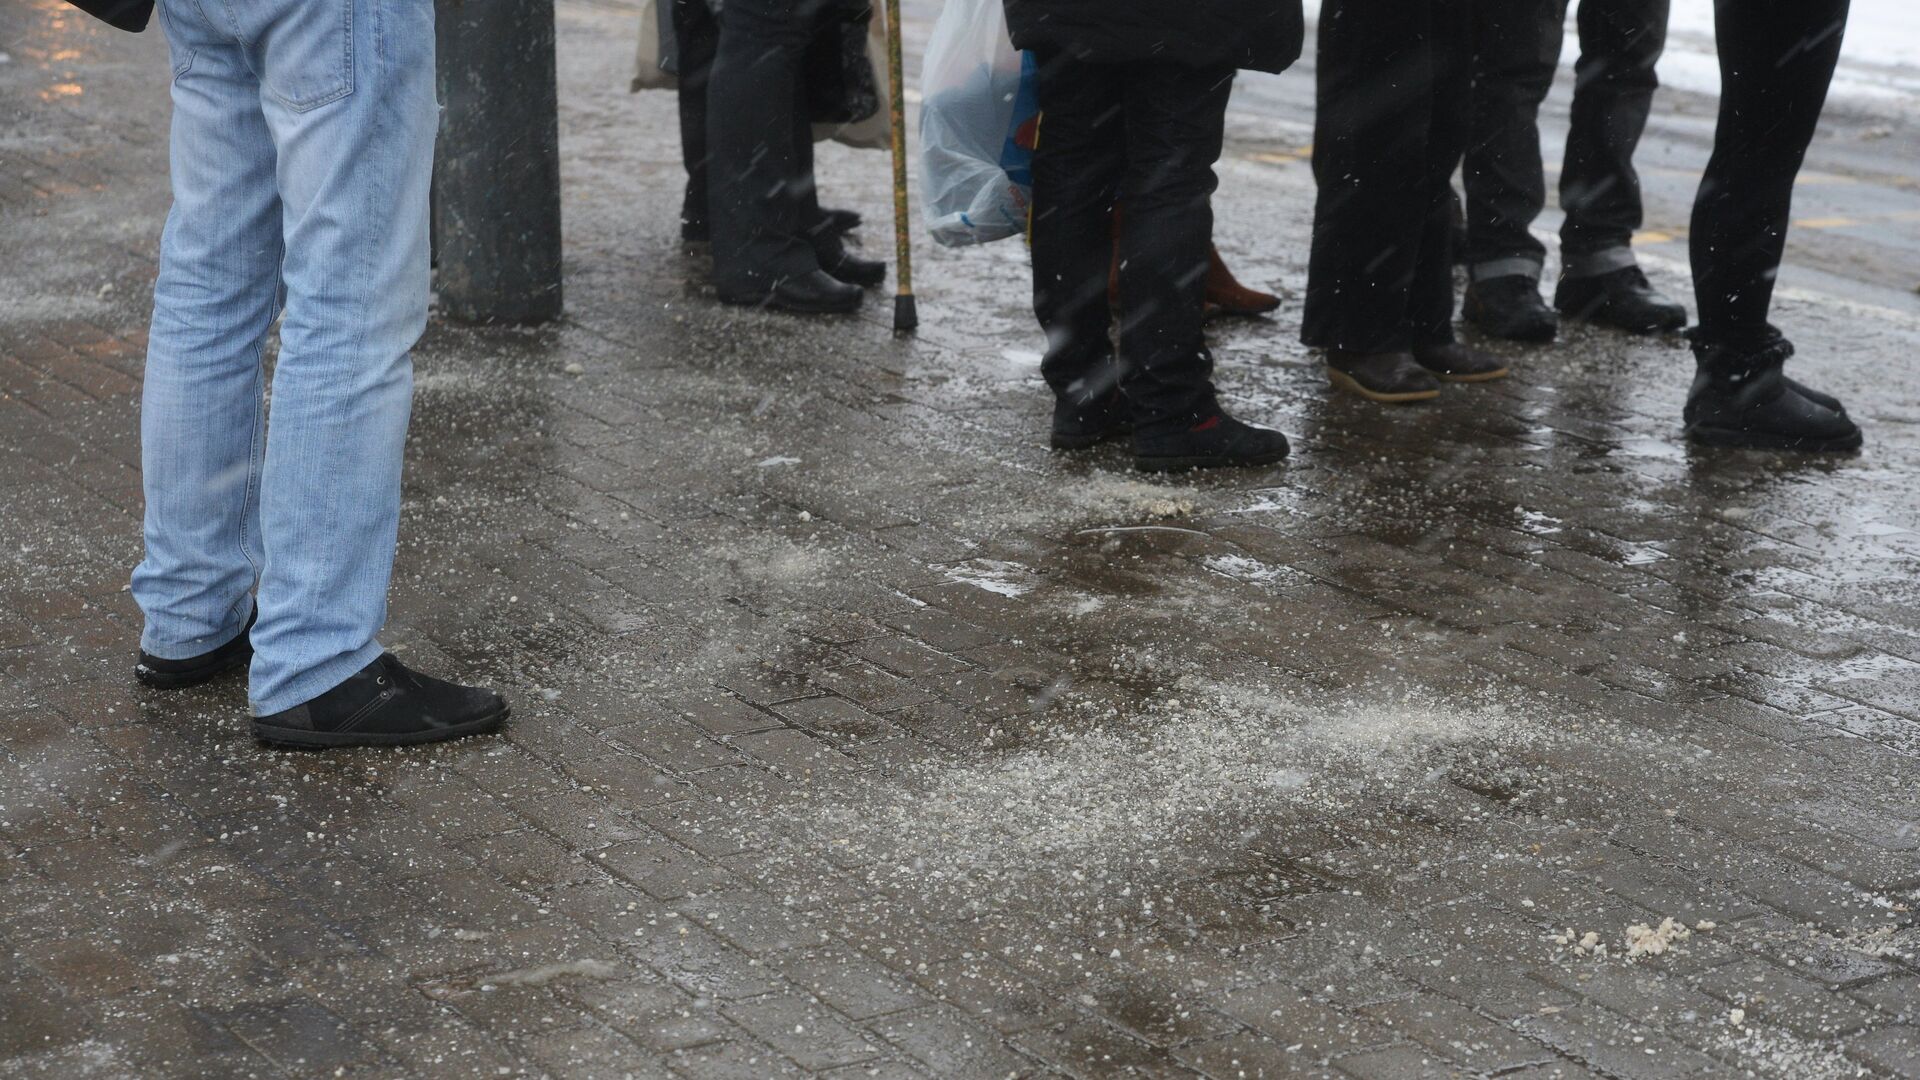 Тротуар, посыпанный противогололедным реагентом, в Москве - РИА Новости, 1920, 21.01.2021